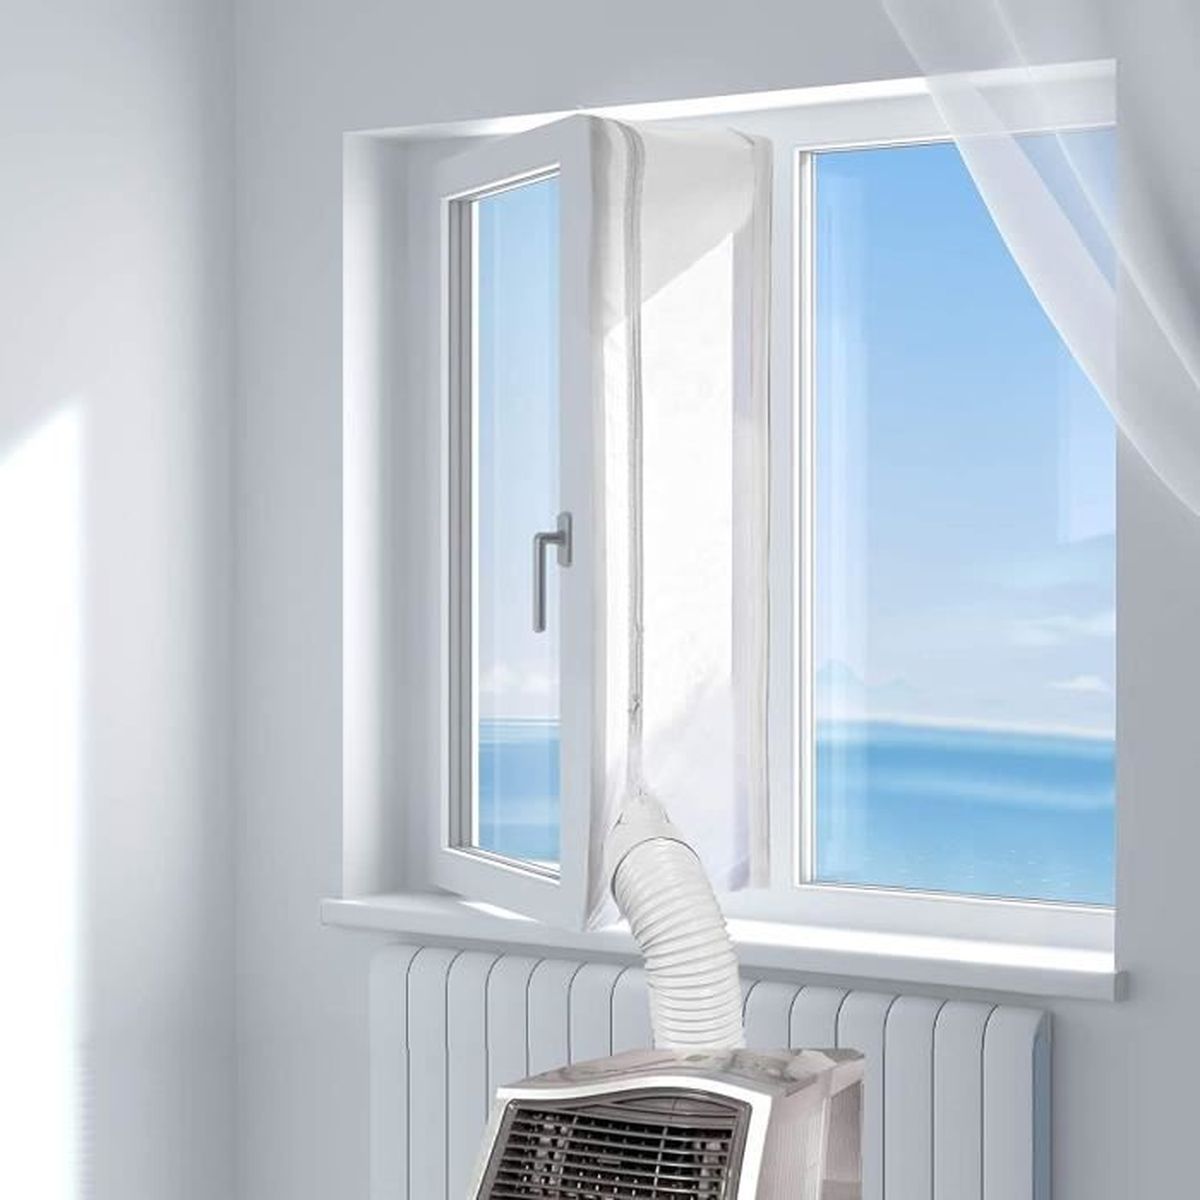 Aozzy 300CM Réaliser le calfeutrage dune fenêtre pour climatiseur Tissu De Calfeutrage De Fenêtres pour Climatiseur Portatif Et Sèche-Linge Fonctionne avec Toutes Les Unités De Climatisation Mobiles 